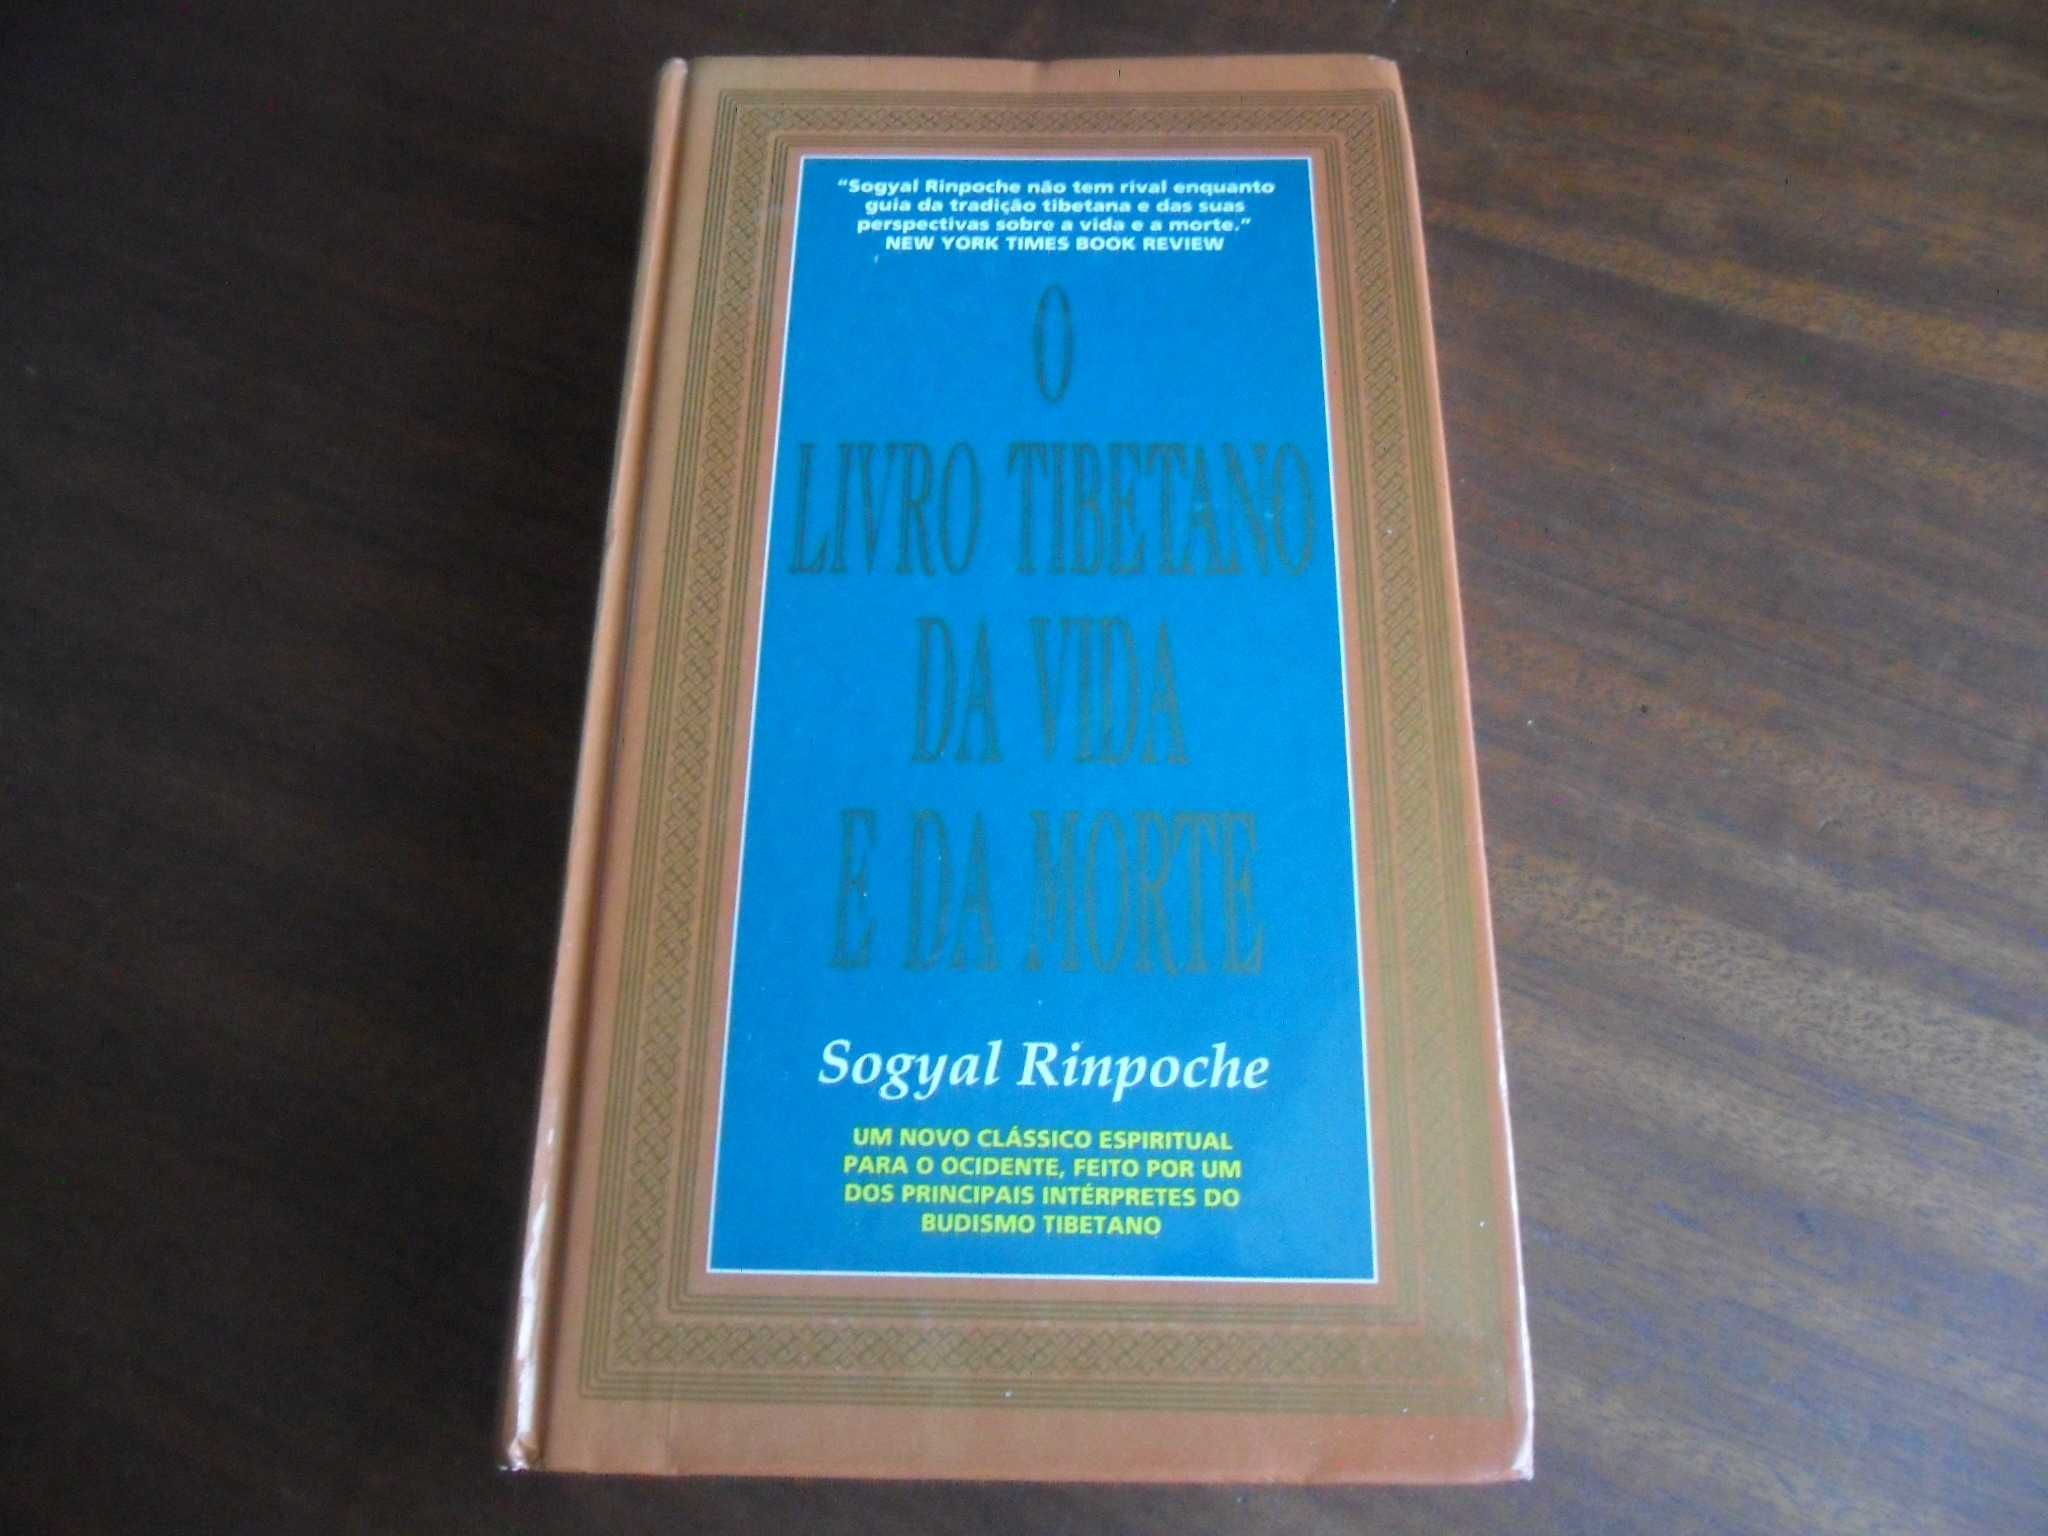 "O Livro Tibetano da Vida e da Morte" de Sogyal Rinpoche - Edição 1995